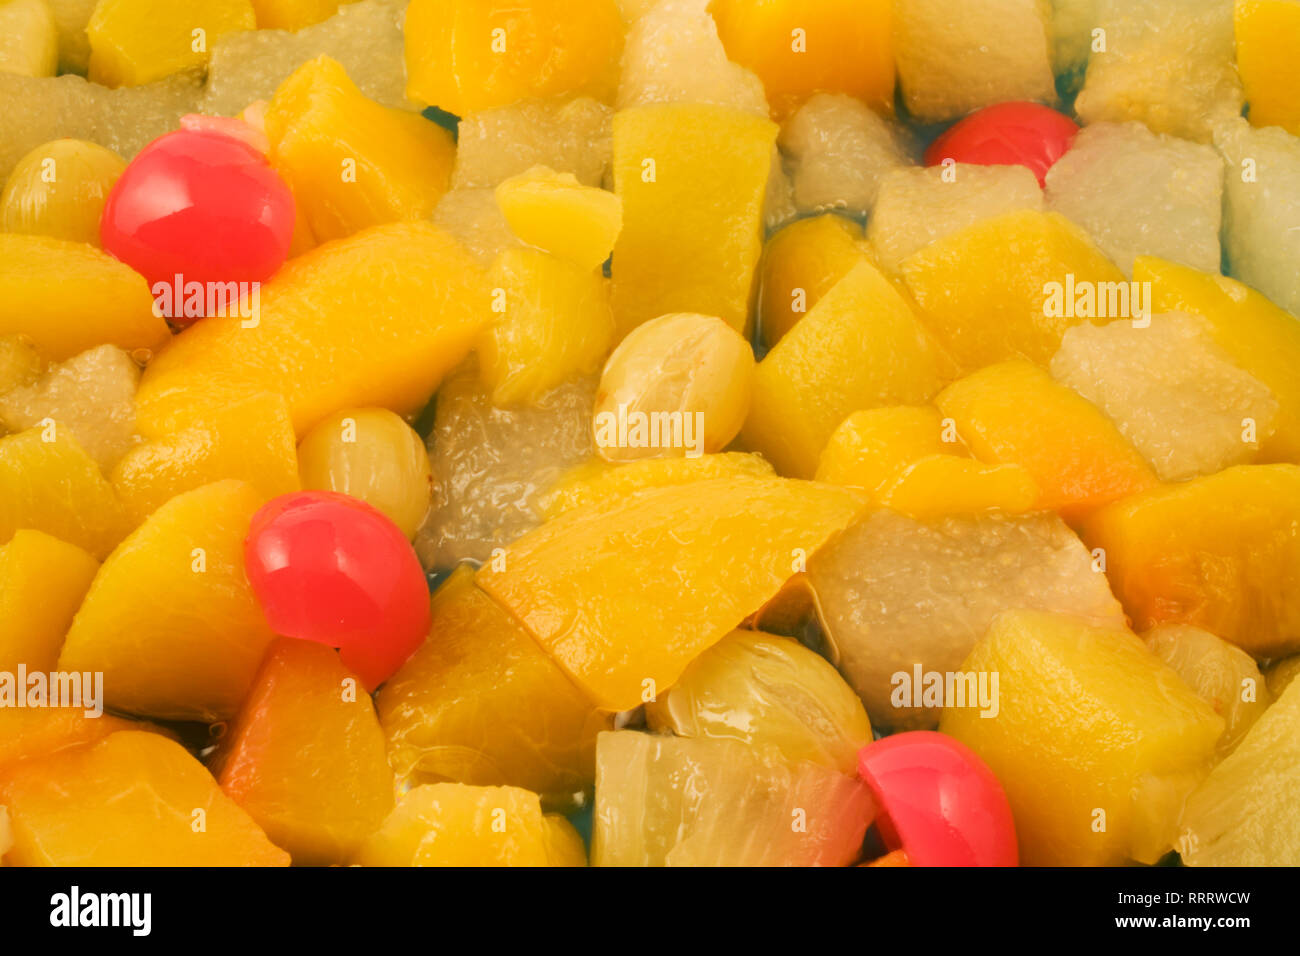 Close-up of cocktail de fruits salade avec cerises, raisins, pêches et poires Banque D'Images